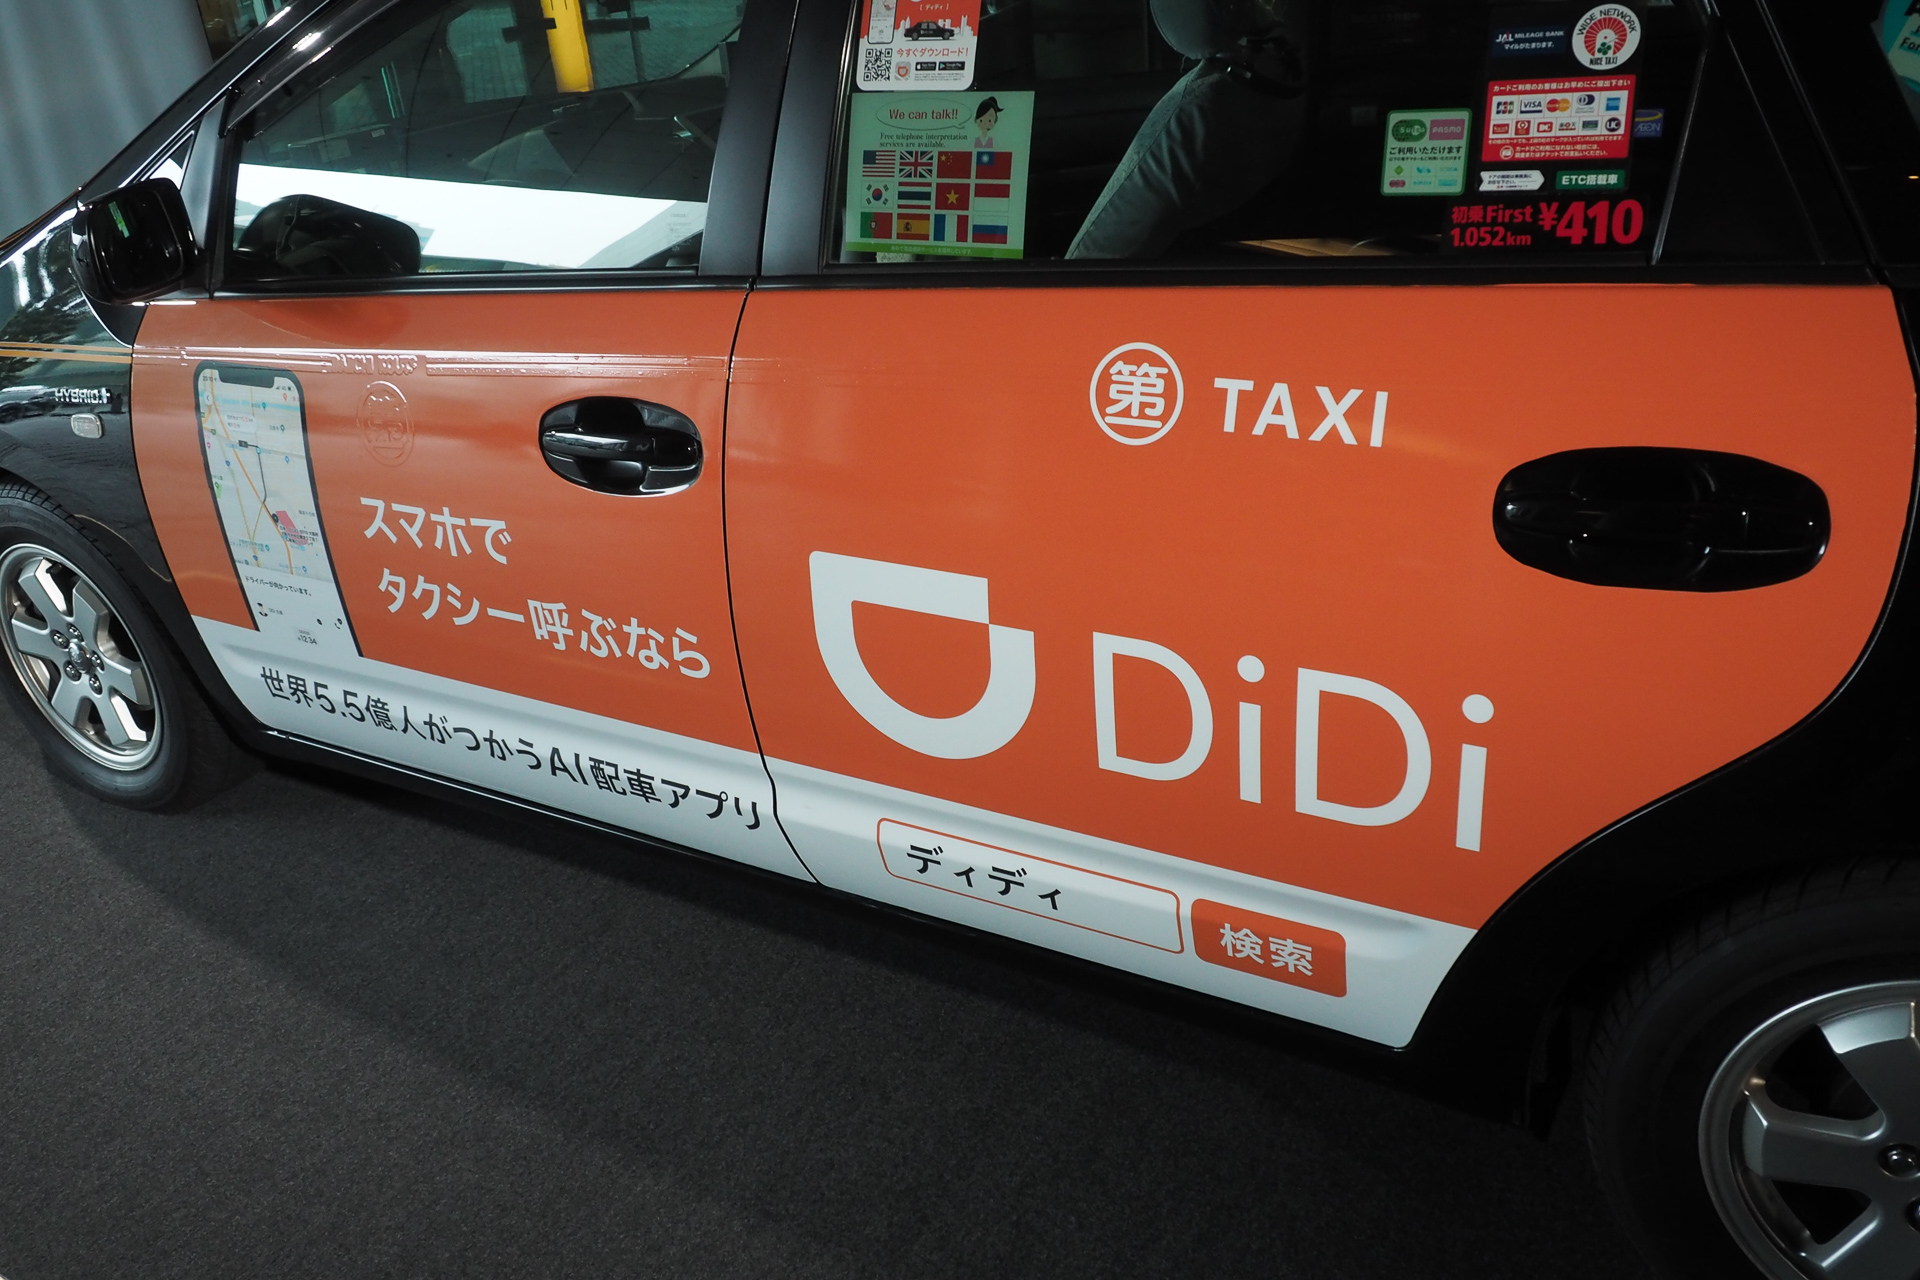 タクシー配車アプリ Didi 東京と京都でサービス開始 東京では迎車無料キャンペーン Car Watch